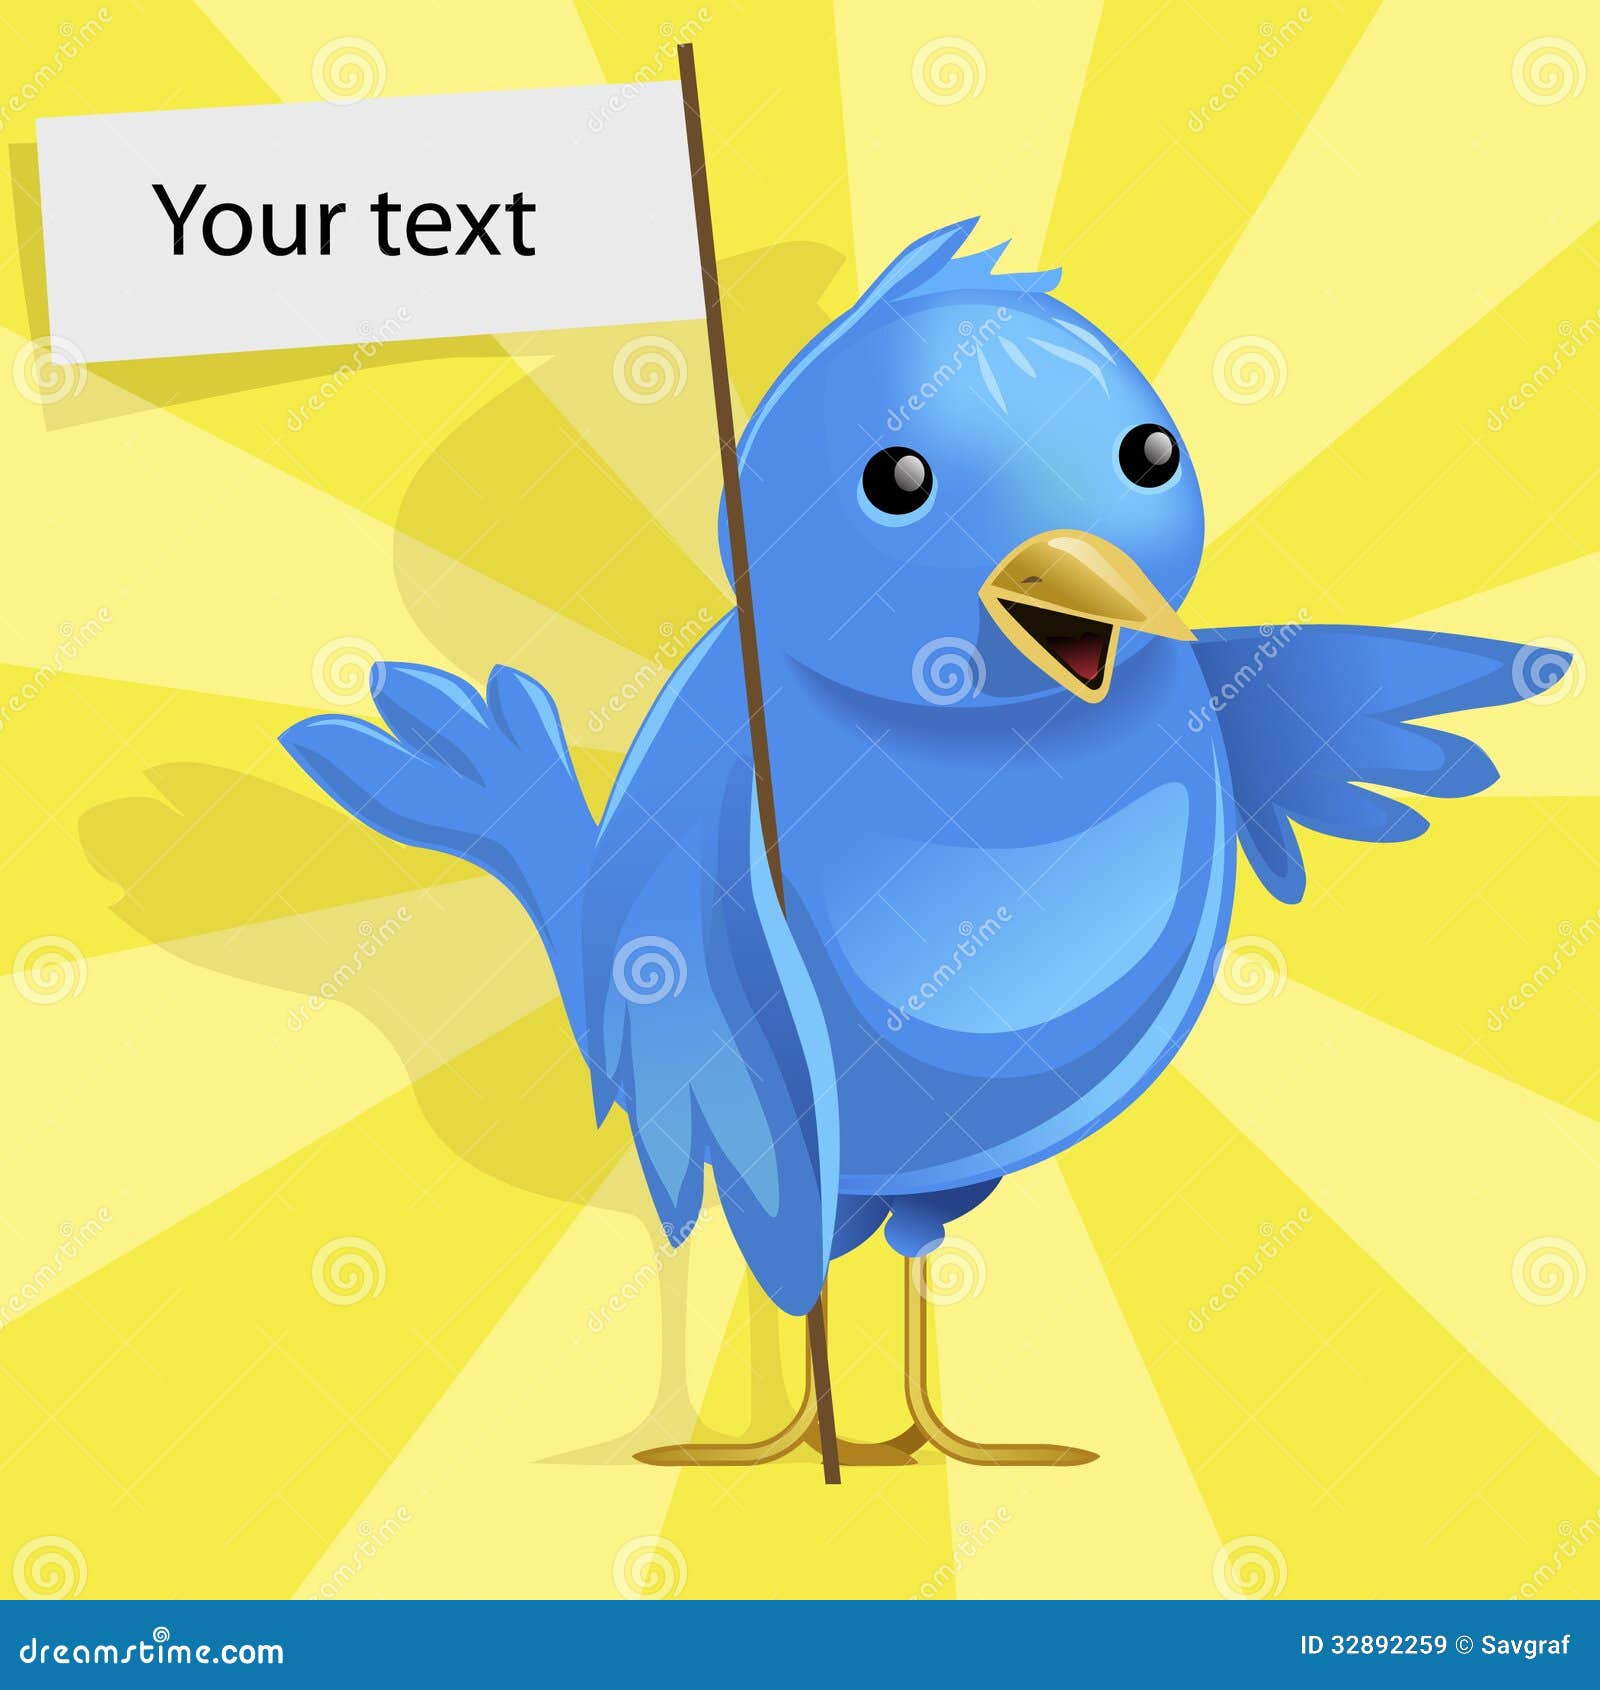 Bạn muốn mang một chú chim sẻ xanh tươi vào thiết kế của mình? Hãy xem ngay bức tranh vector chim sẻ này để lấy cảm hứng nhé!